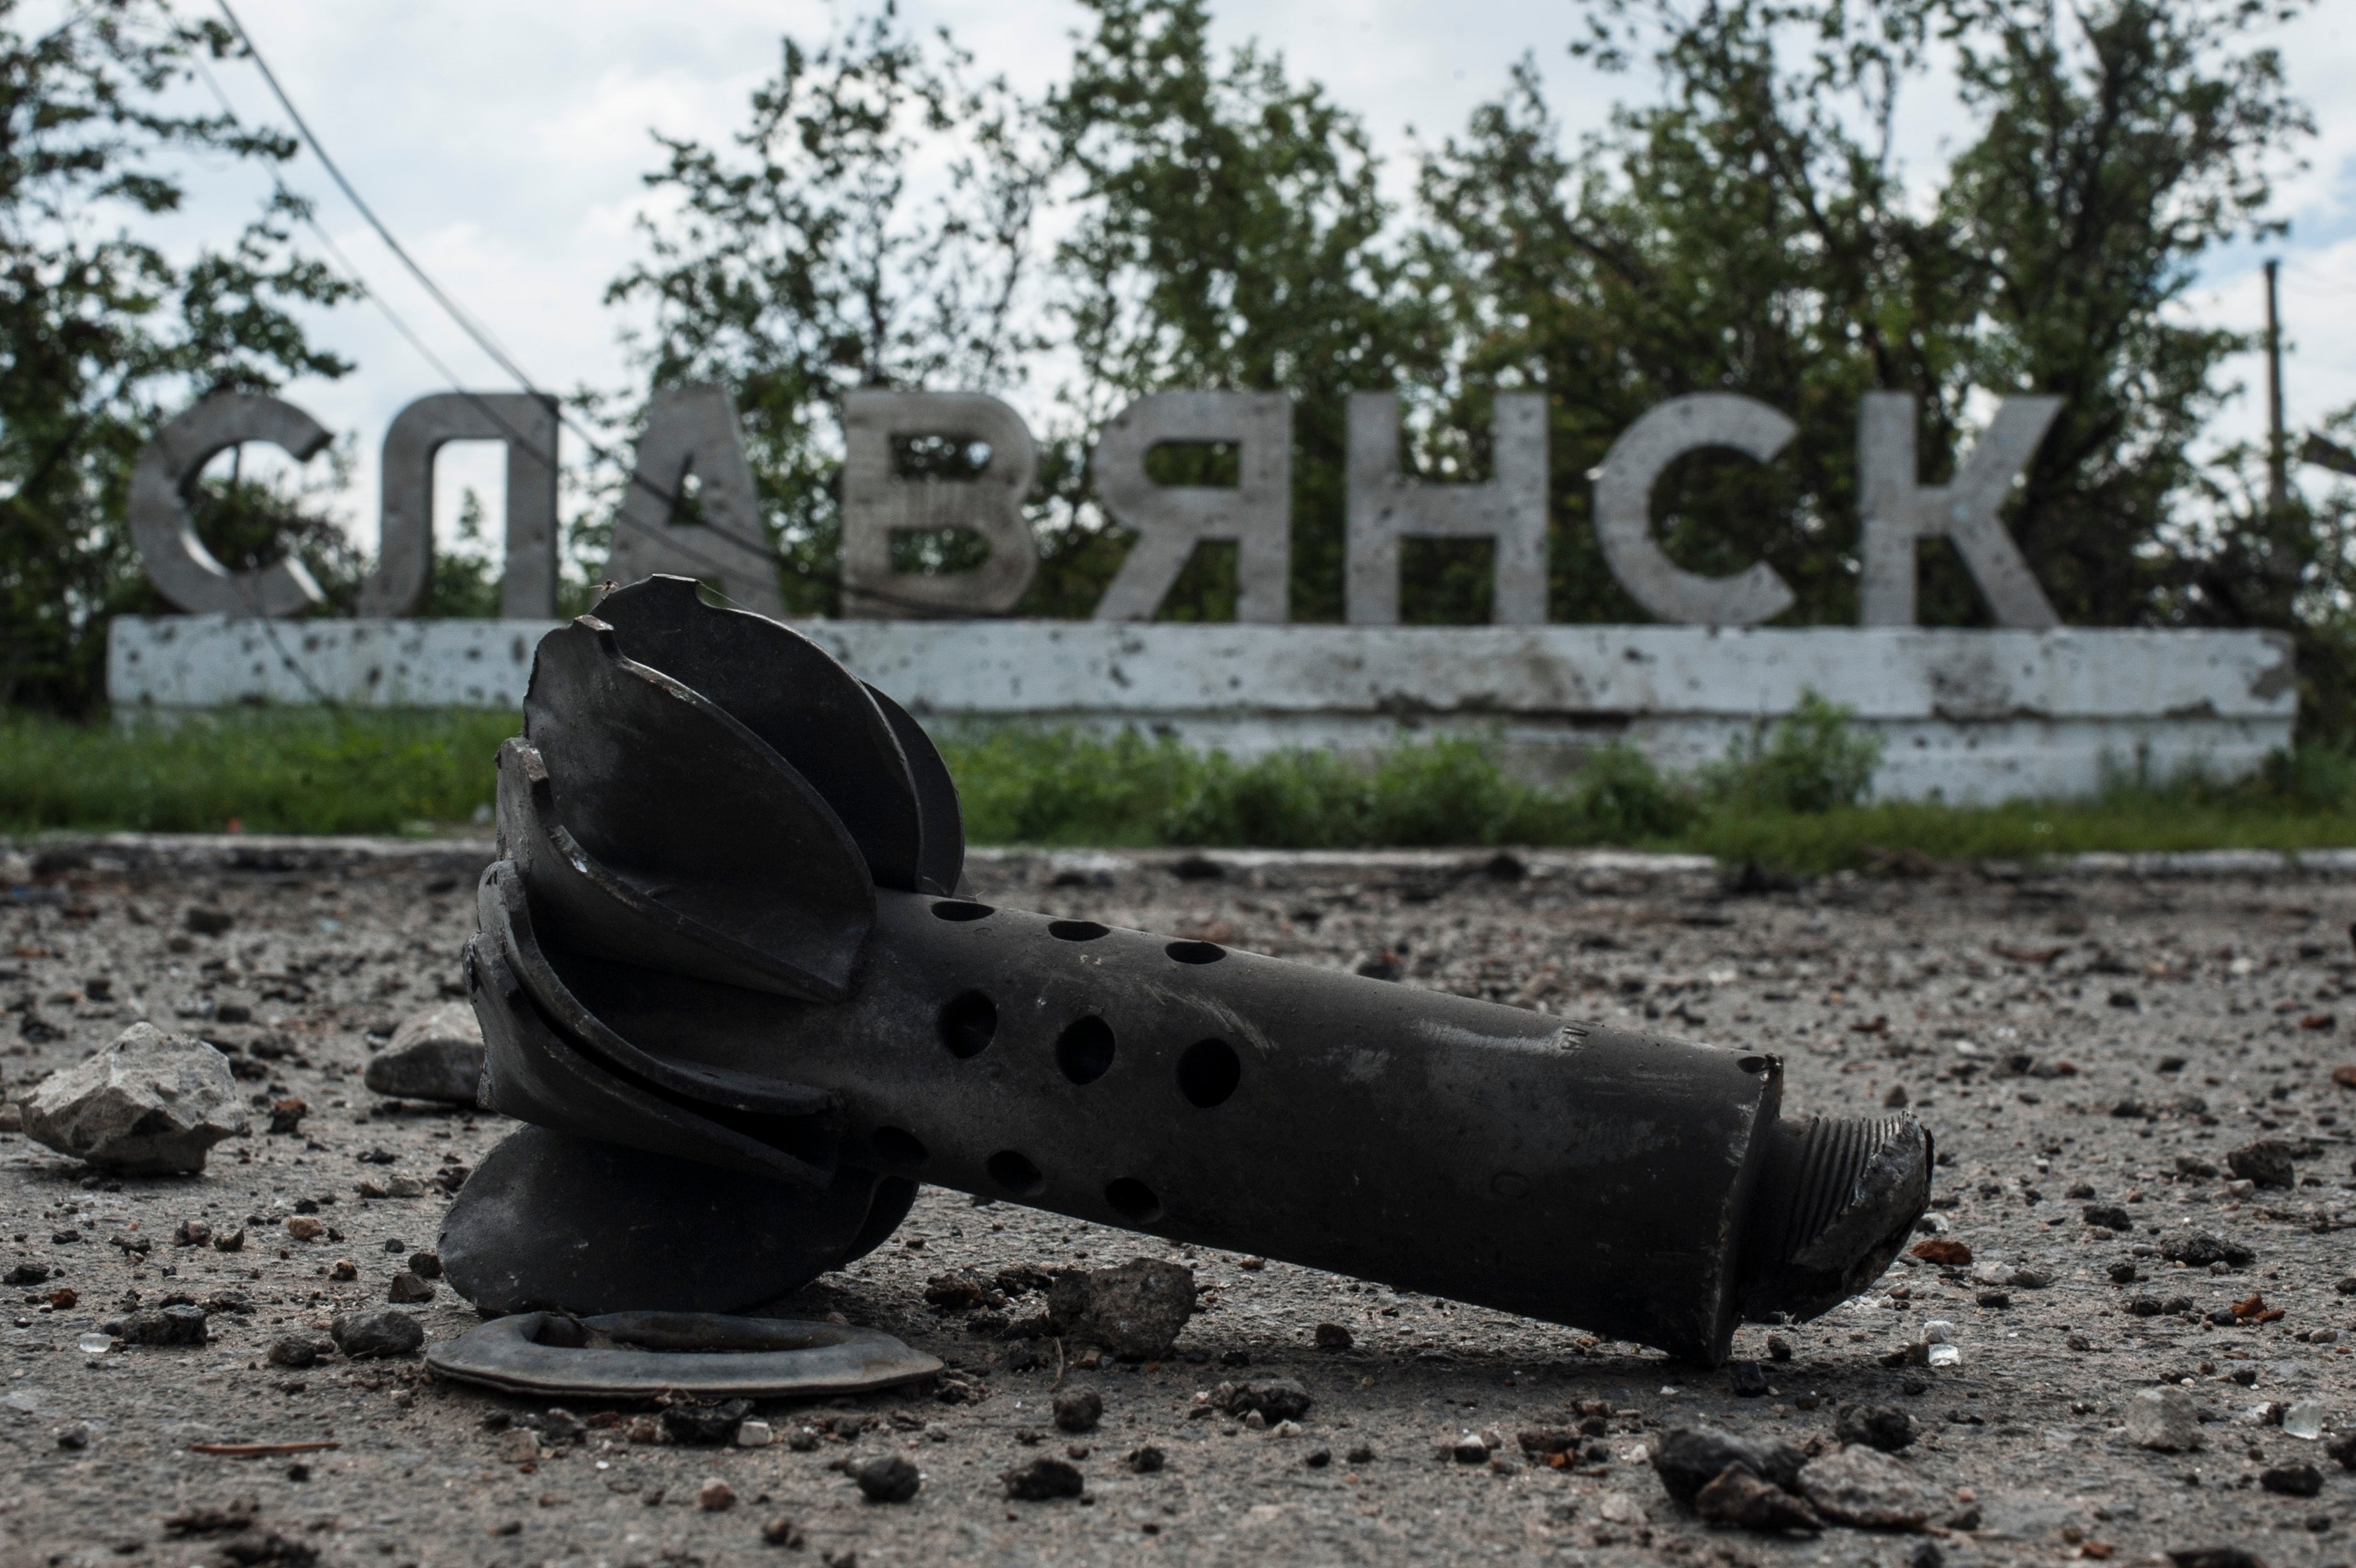 Parte de un mortero se ve ante un cartel donde pone “Slovyansk”, tras intensos combates entre combatientes prorrusos y ucranianos